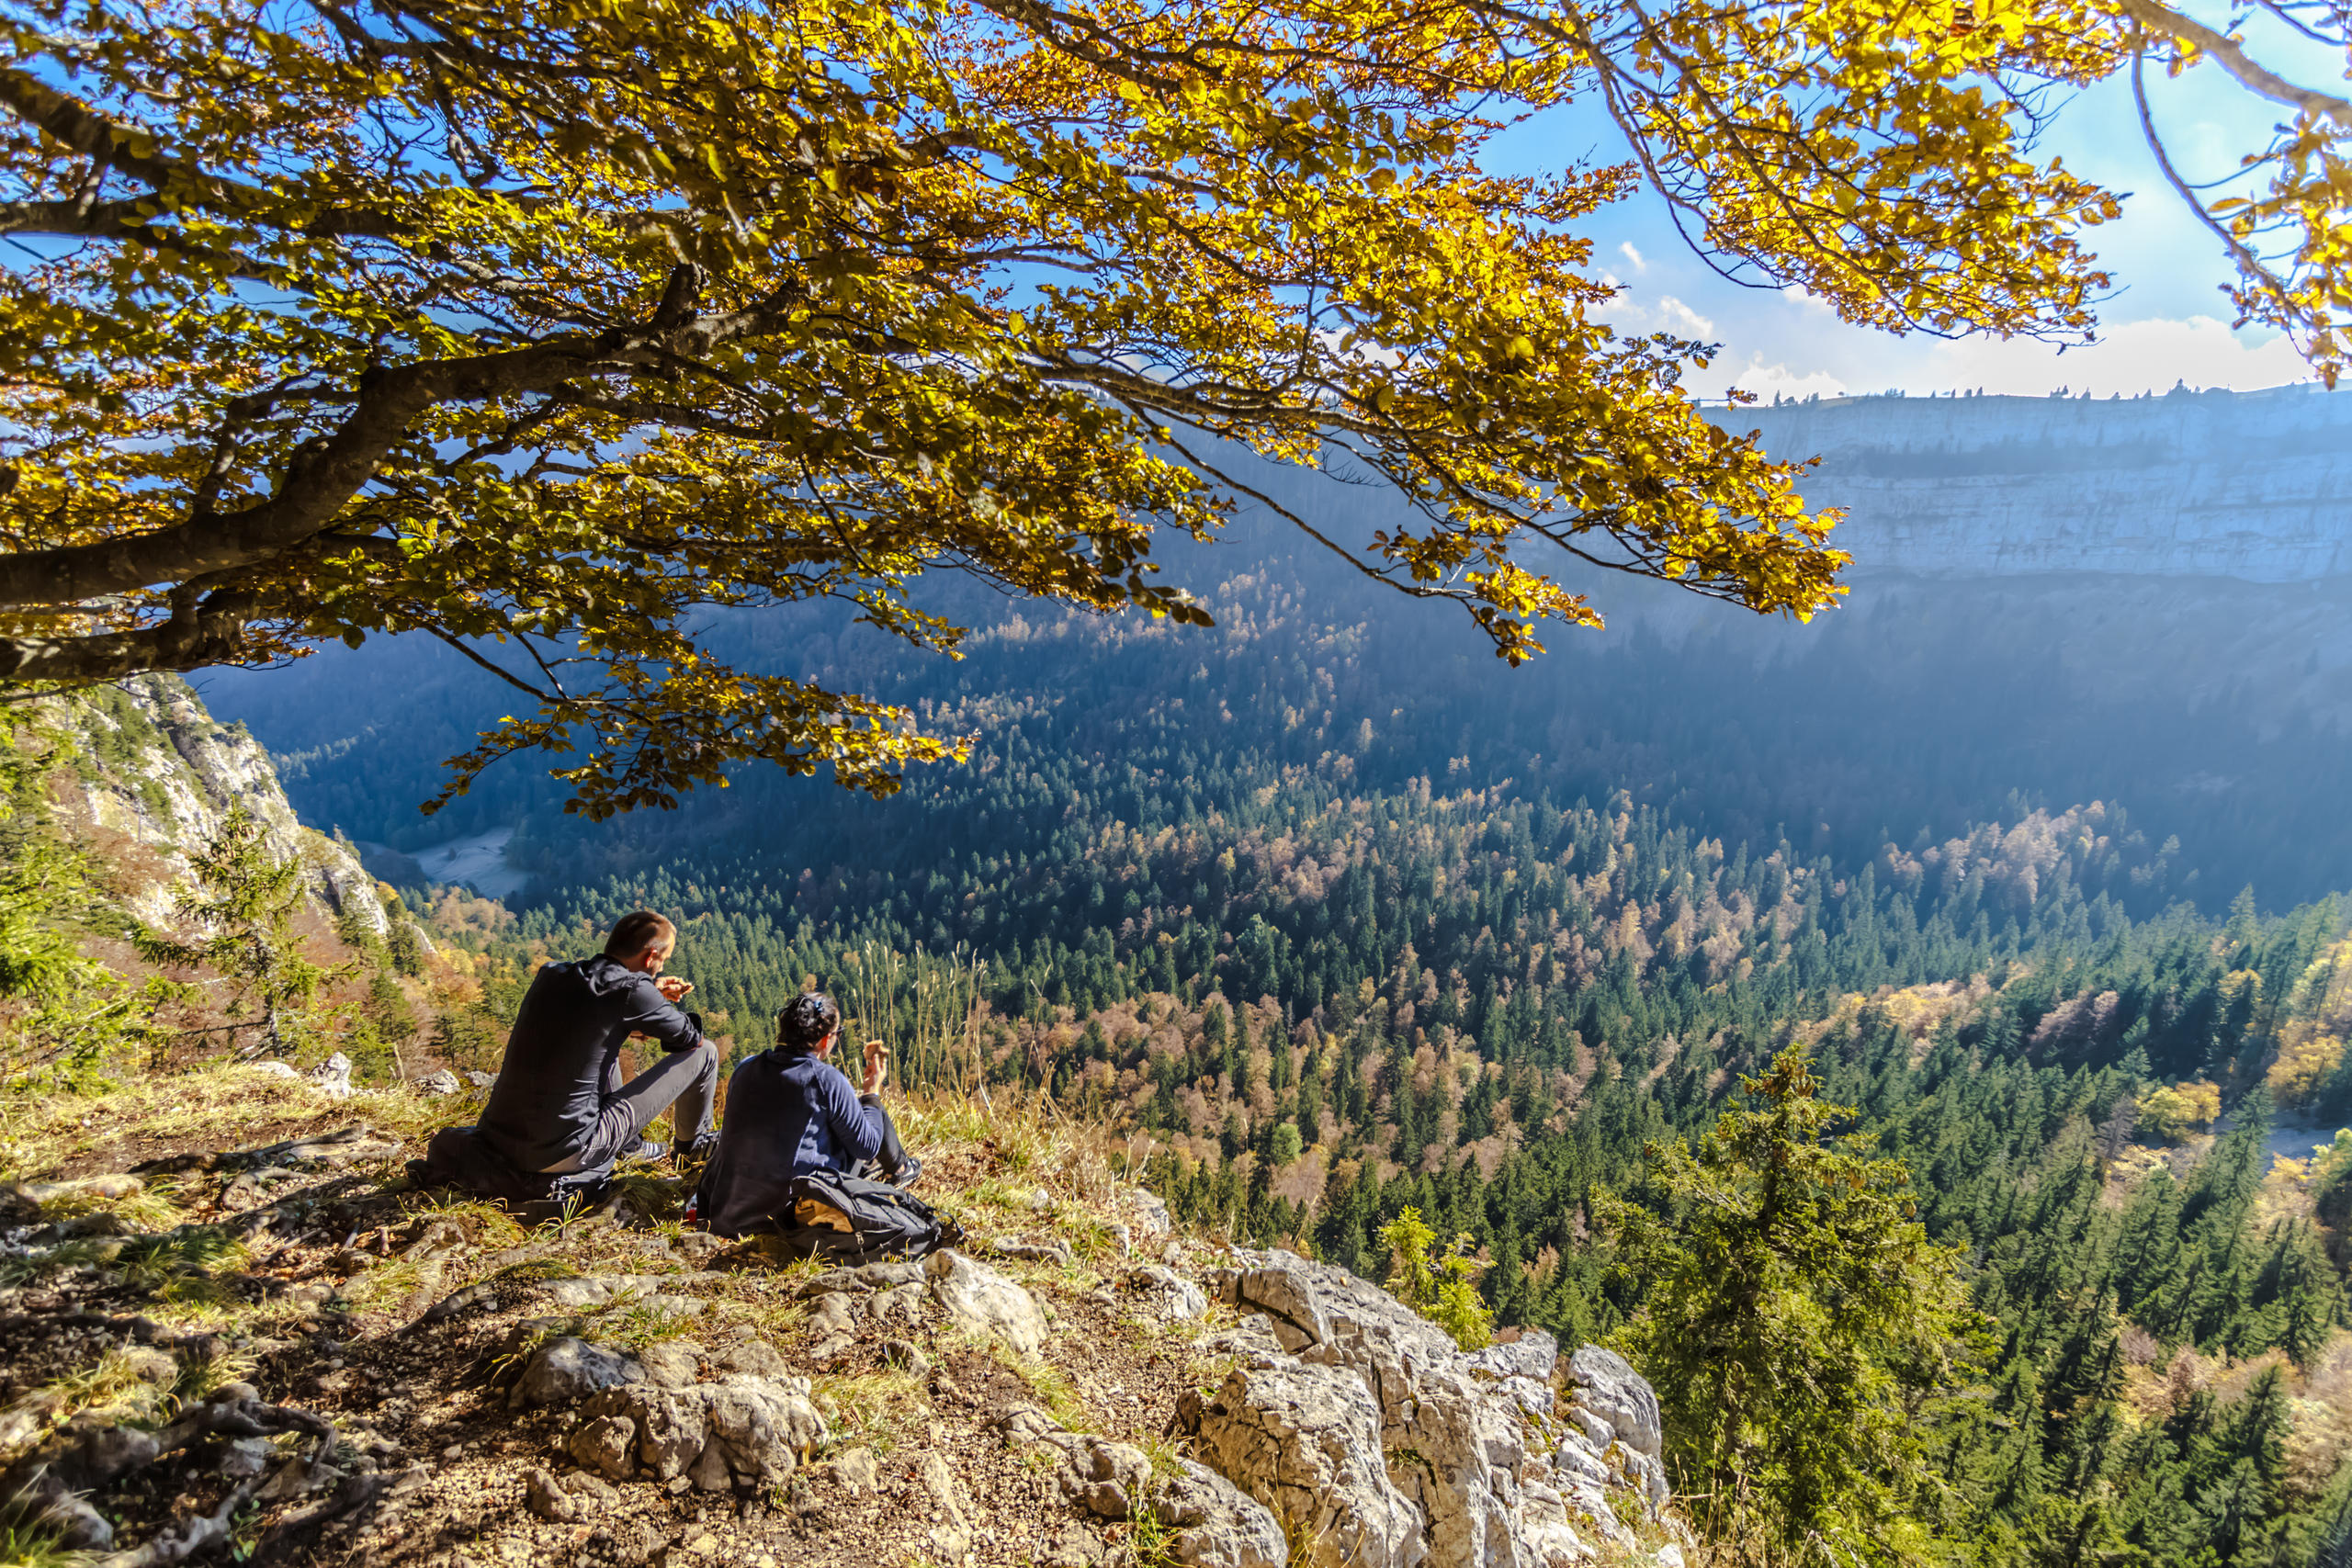 就这样和你坐在一起，面对马蹄谷的峭壁，看尽秋天的赤橙黄绿。